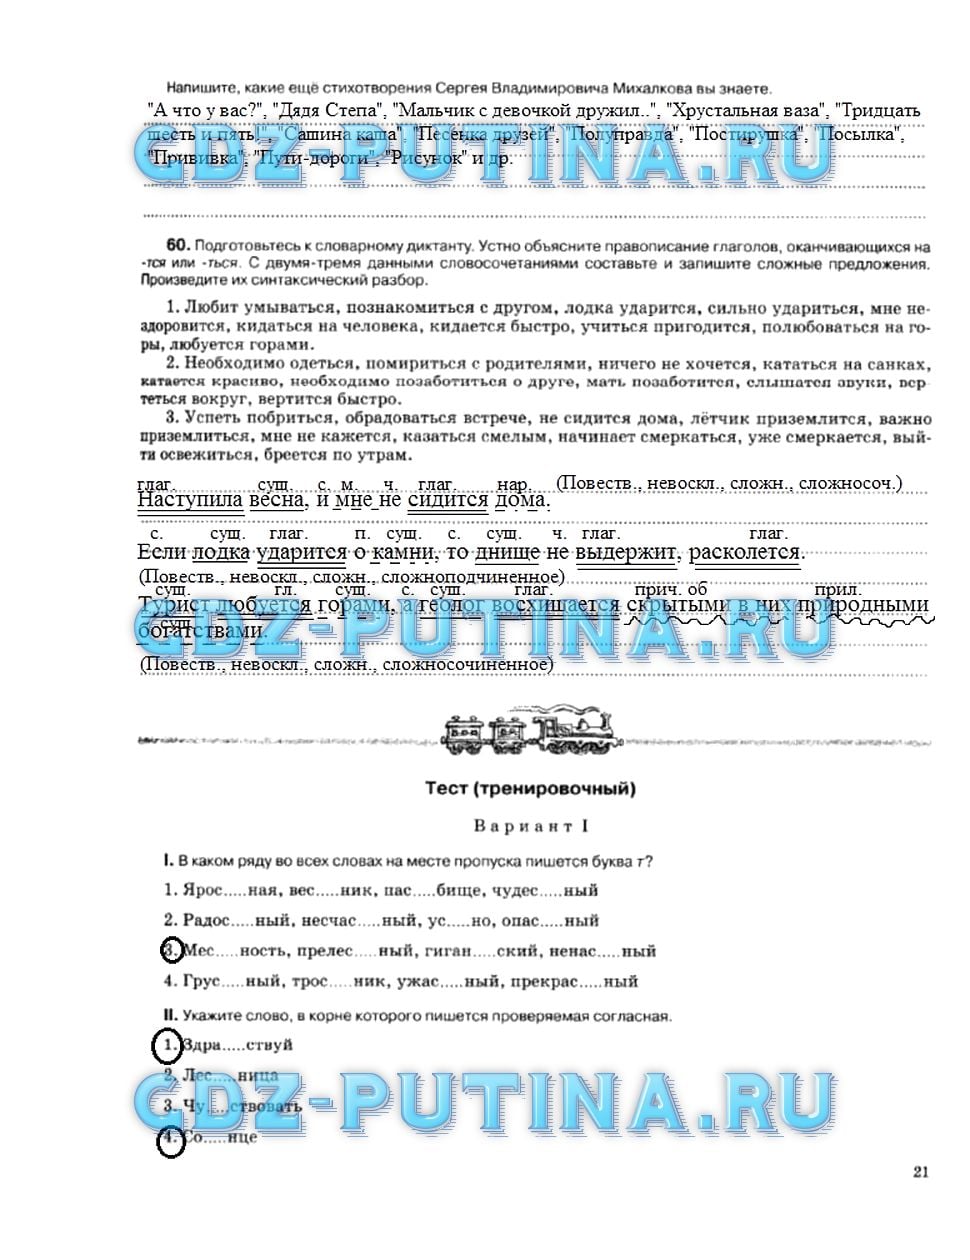 гдз 5 класс рабочая тетрадь страница 21 русский язык Ларионова